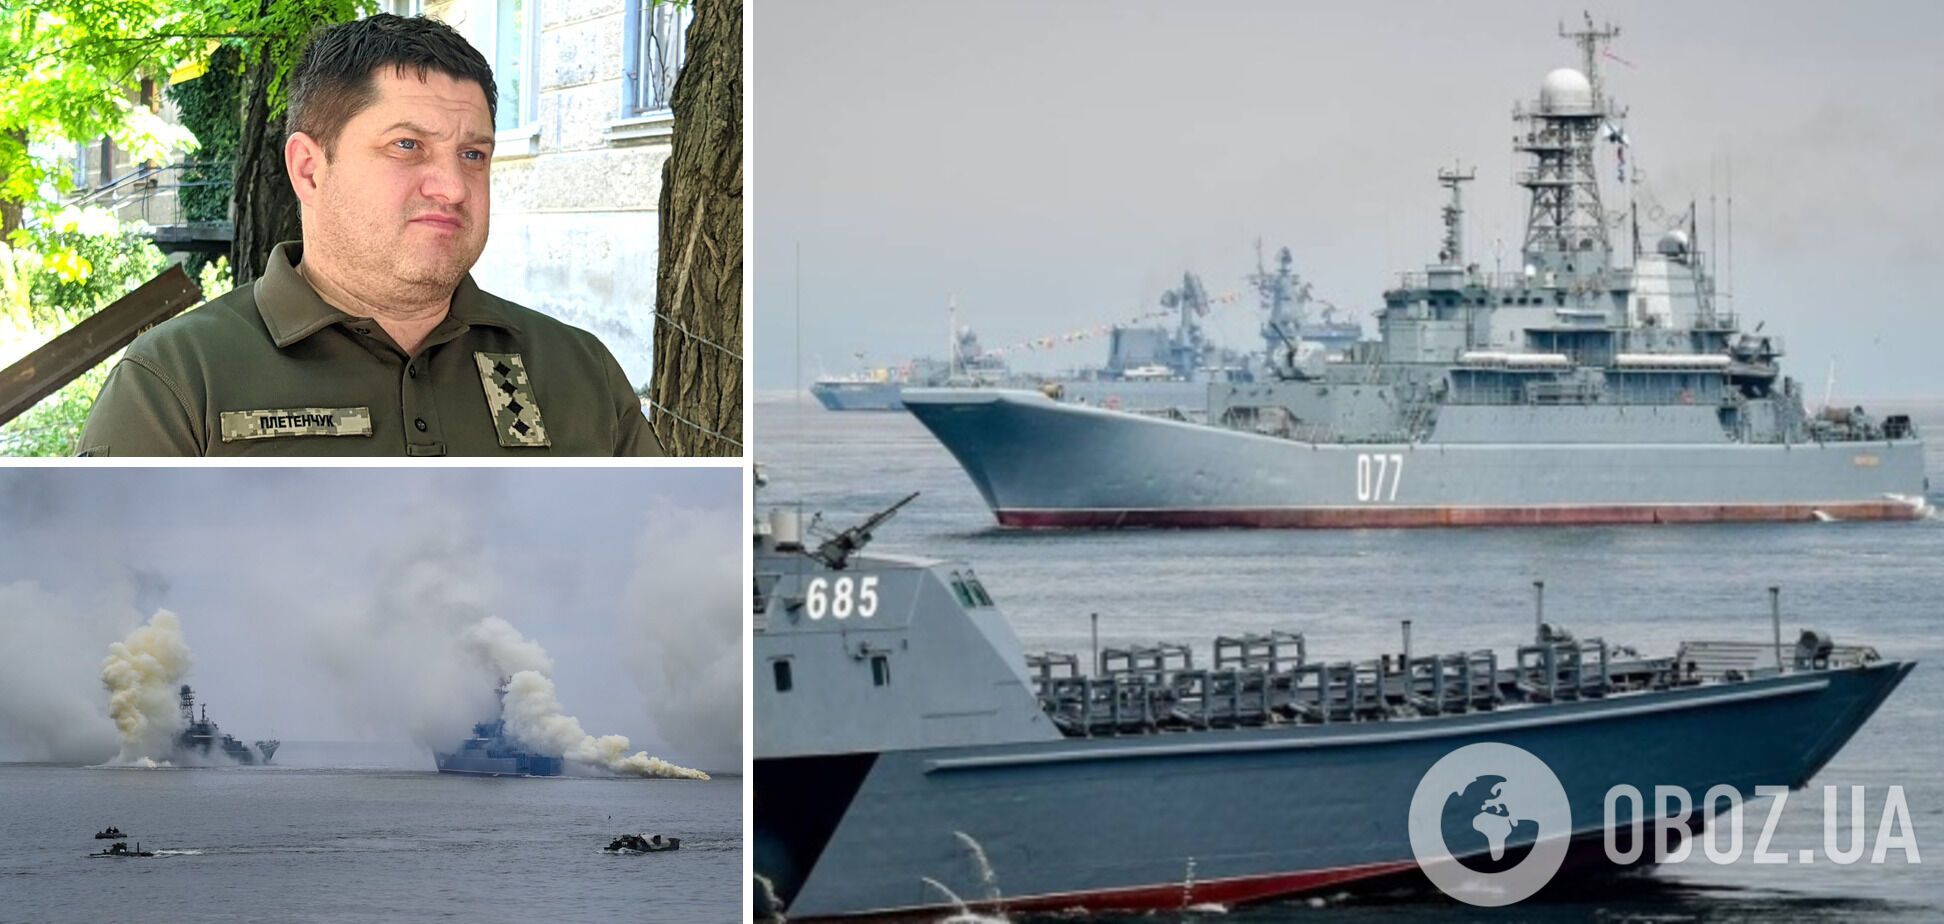  В ВМС Украины рассказали, сколько крупных десантных кораблей РФ удалось вывести из строя